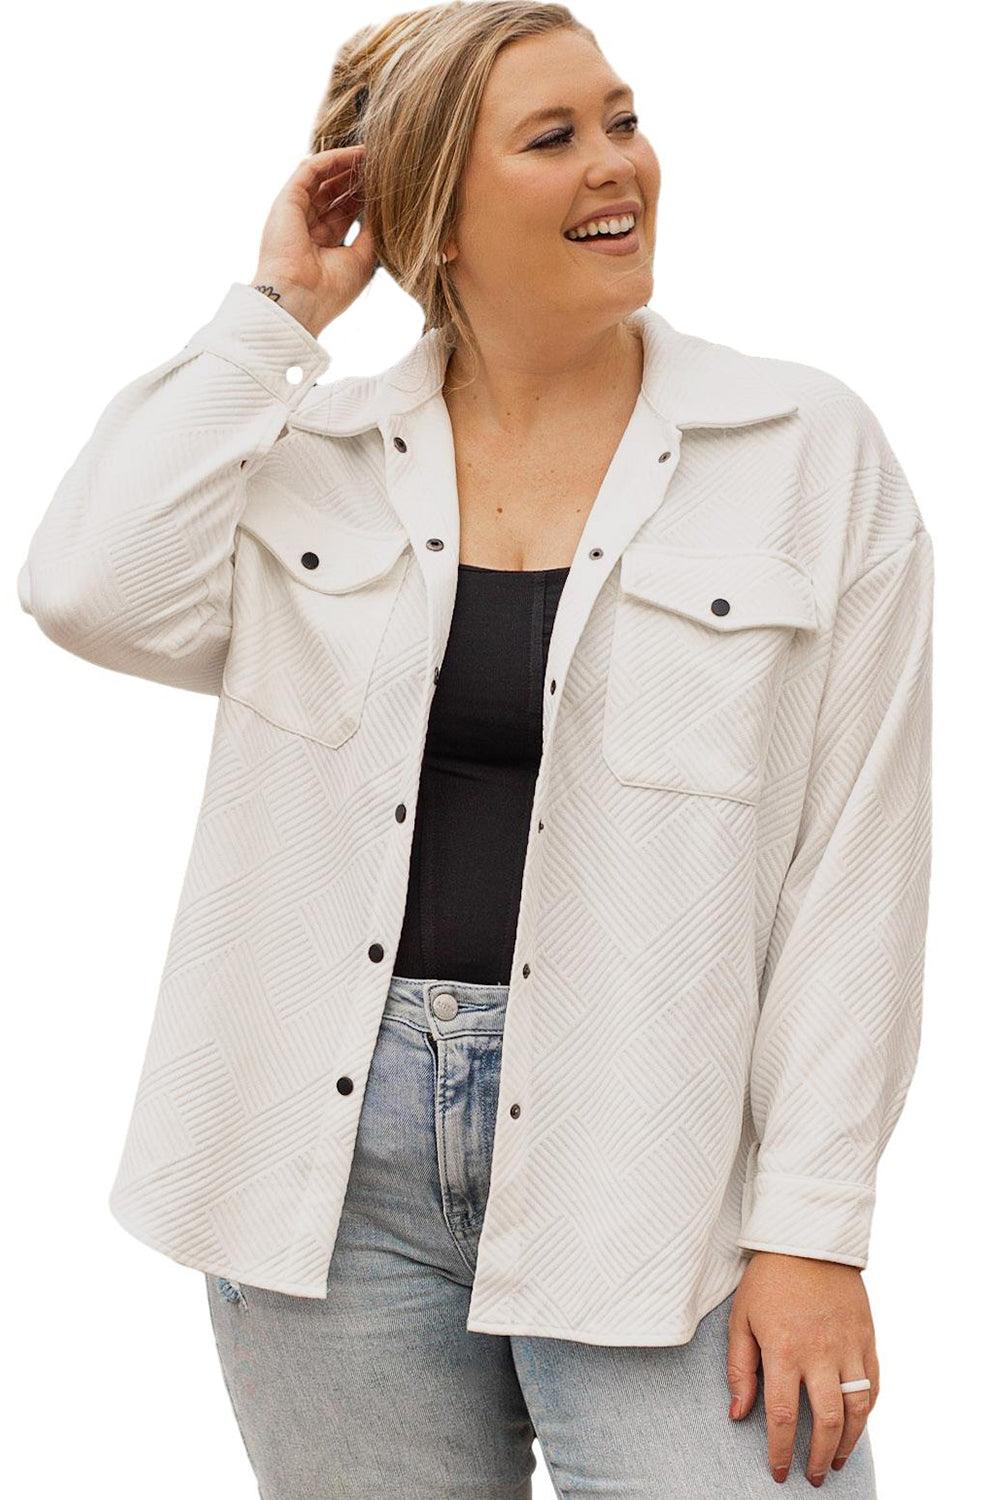 Beige Plus Size Textured Flap Pockets Jacket - L & M Kee, LLC